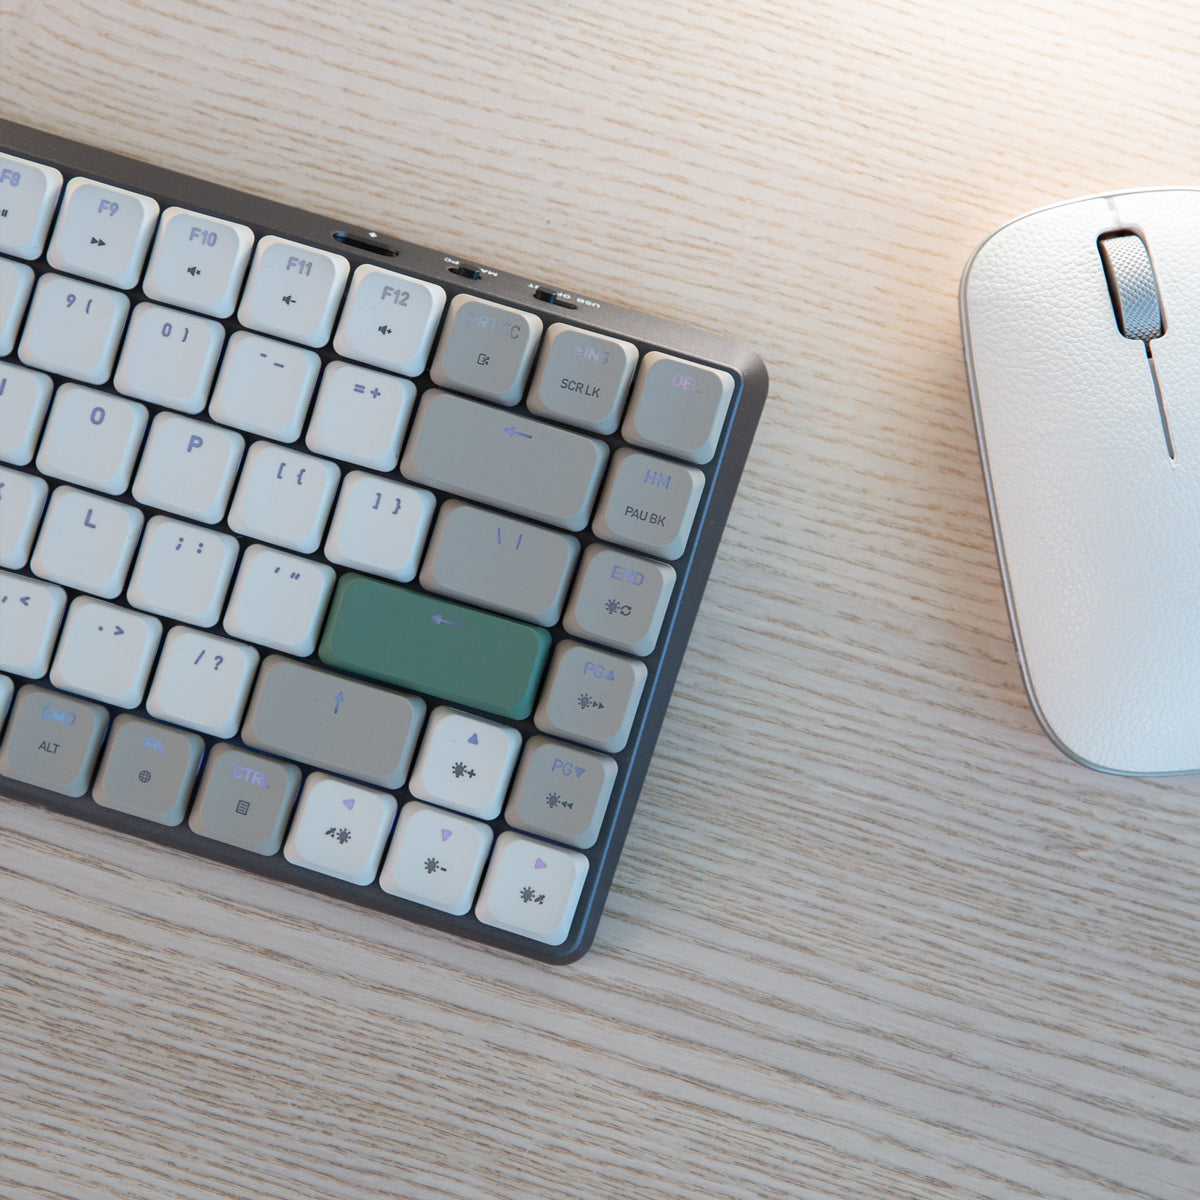 لوحة مفاتيح Cascade رفيعة قابلة للتبديل السريع بنسبة 75%